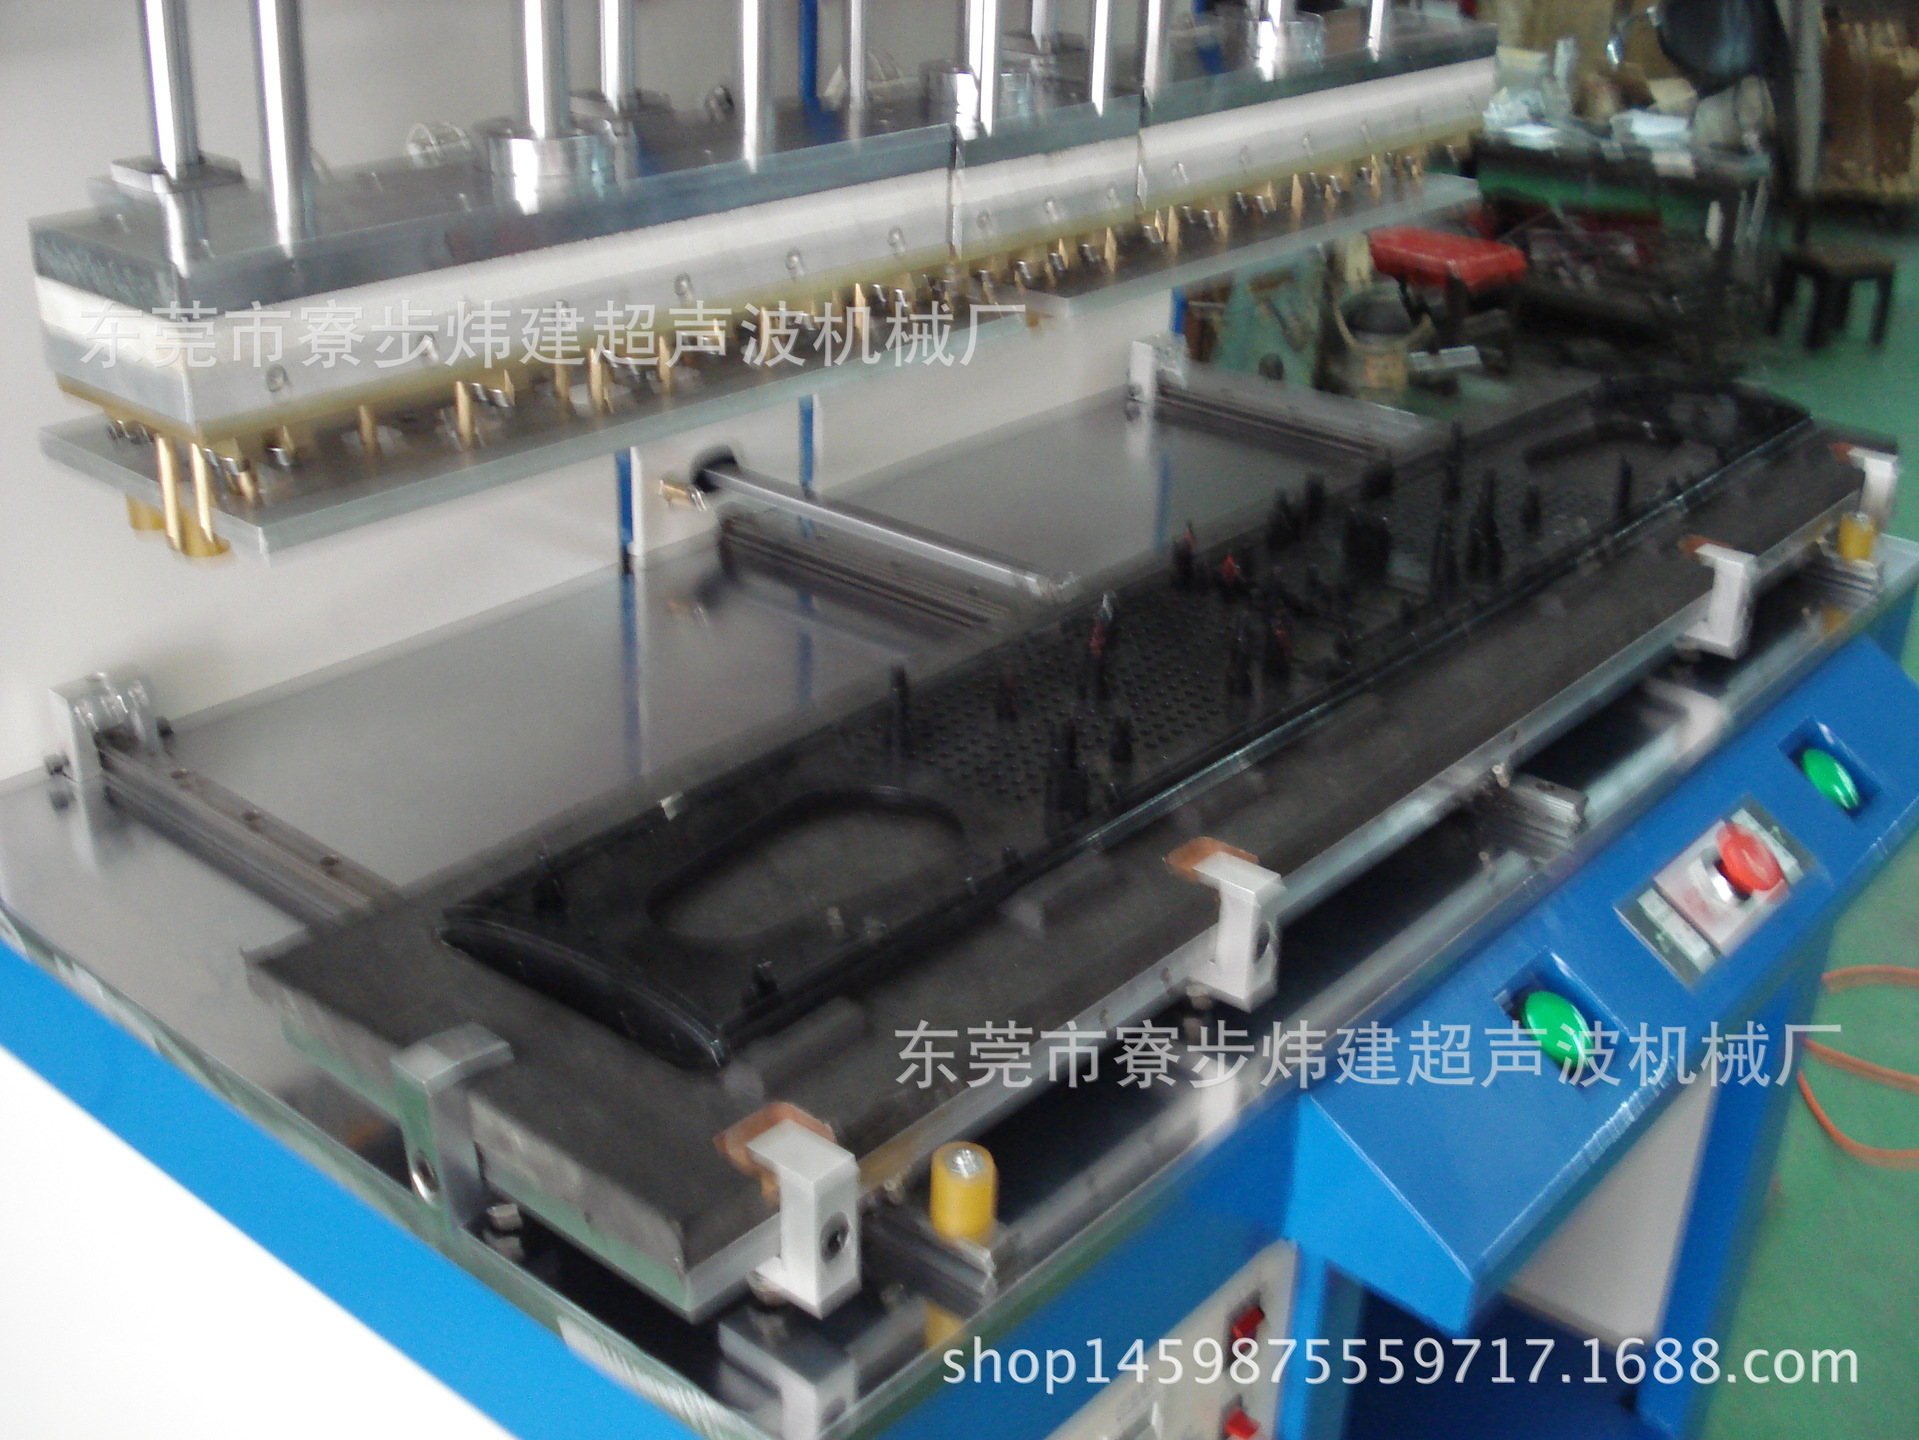 东莞炜建超音波熔接机械厂产销湖南超声波焊接设备 模具加工2